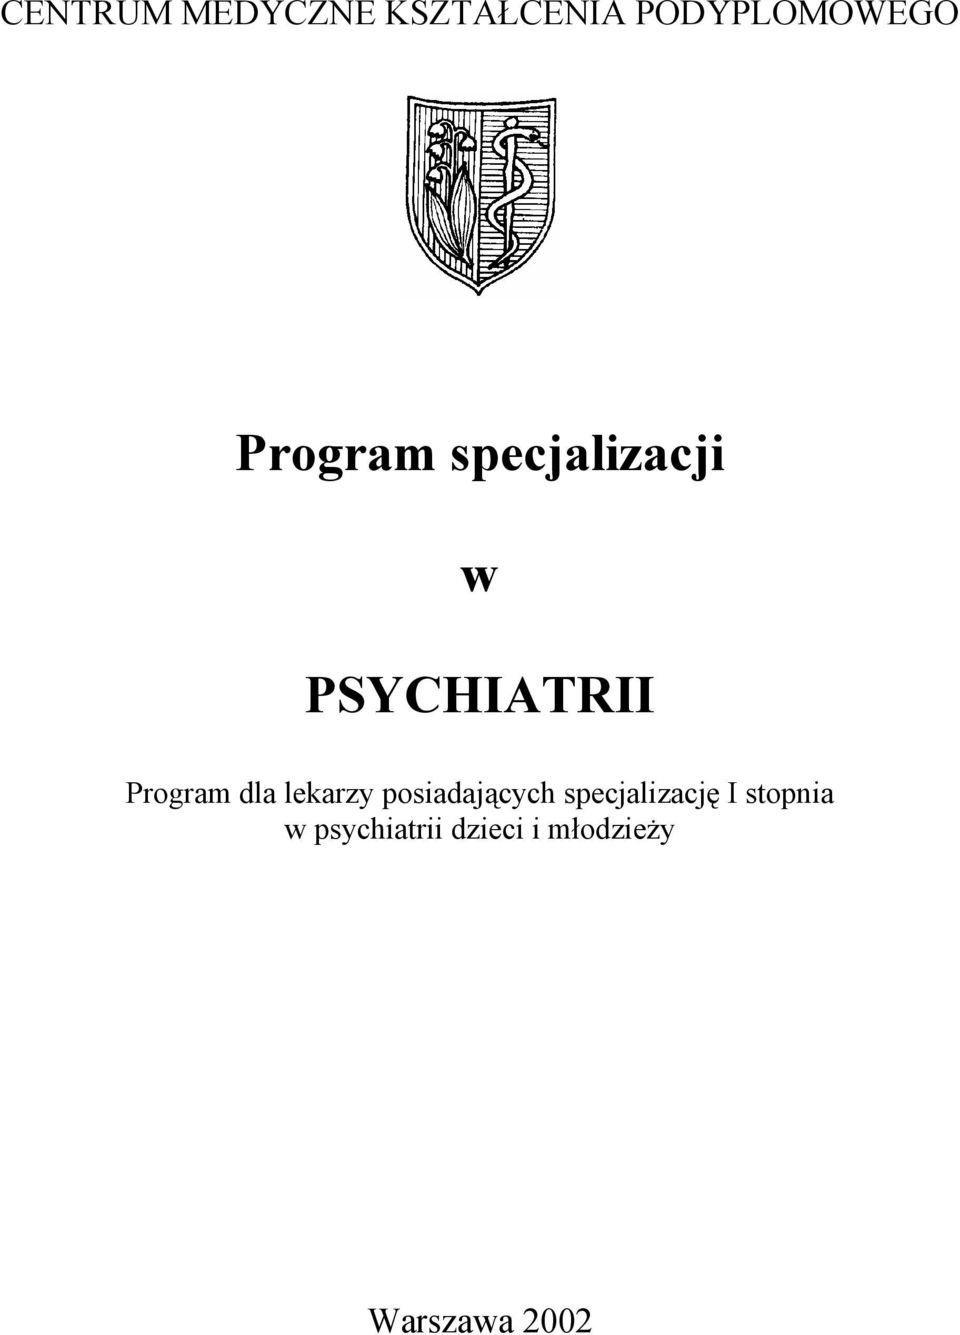 PSYCHIATRII Program dla lekarzy